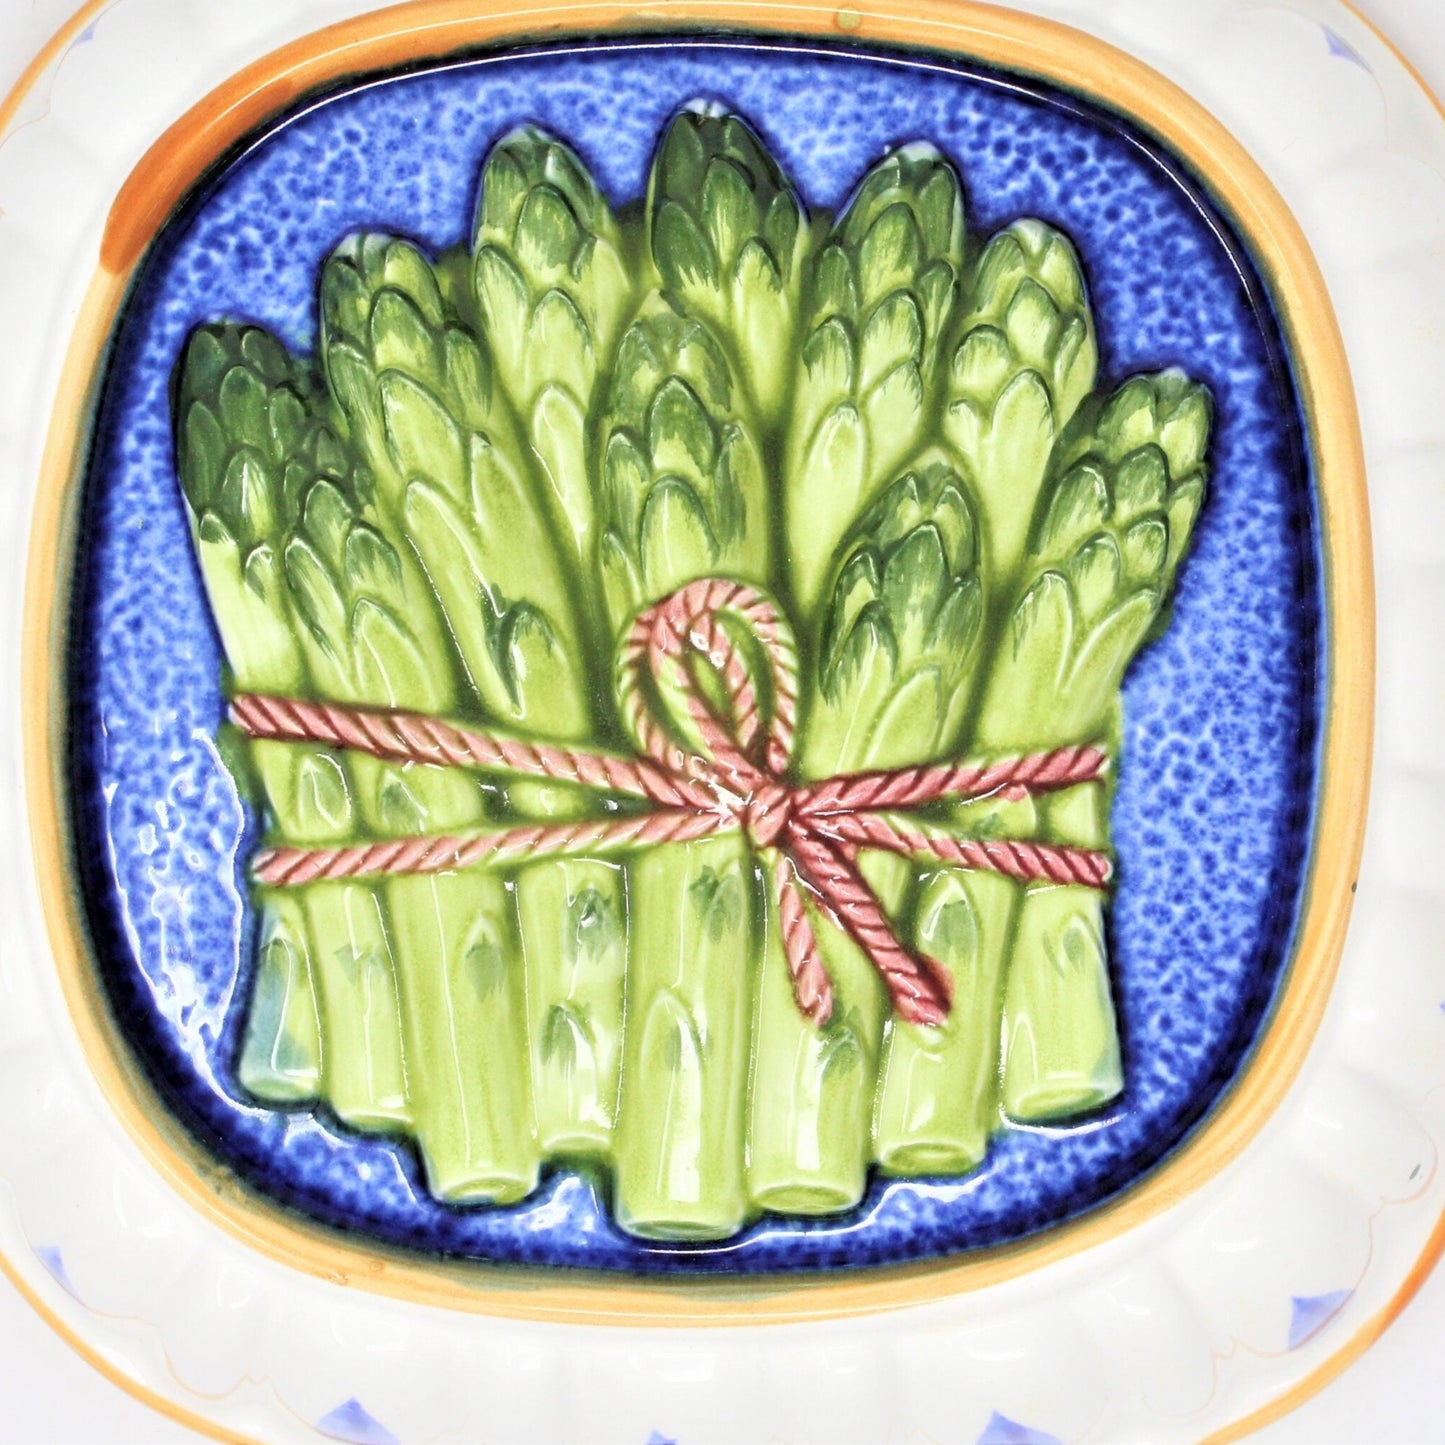 Decorative Mold, Gailstyn-Sutton, Asparagus, Towle Japan, Ceramic, Vintage